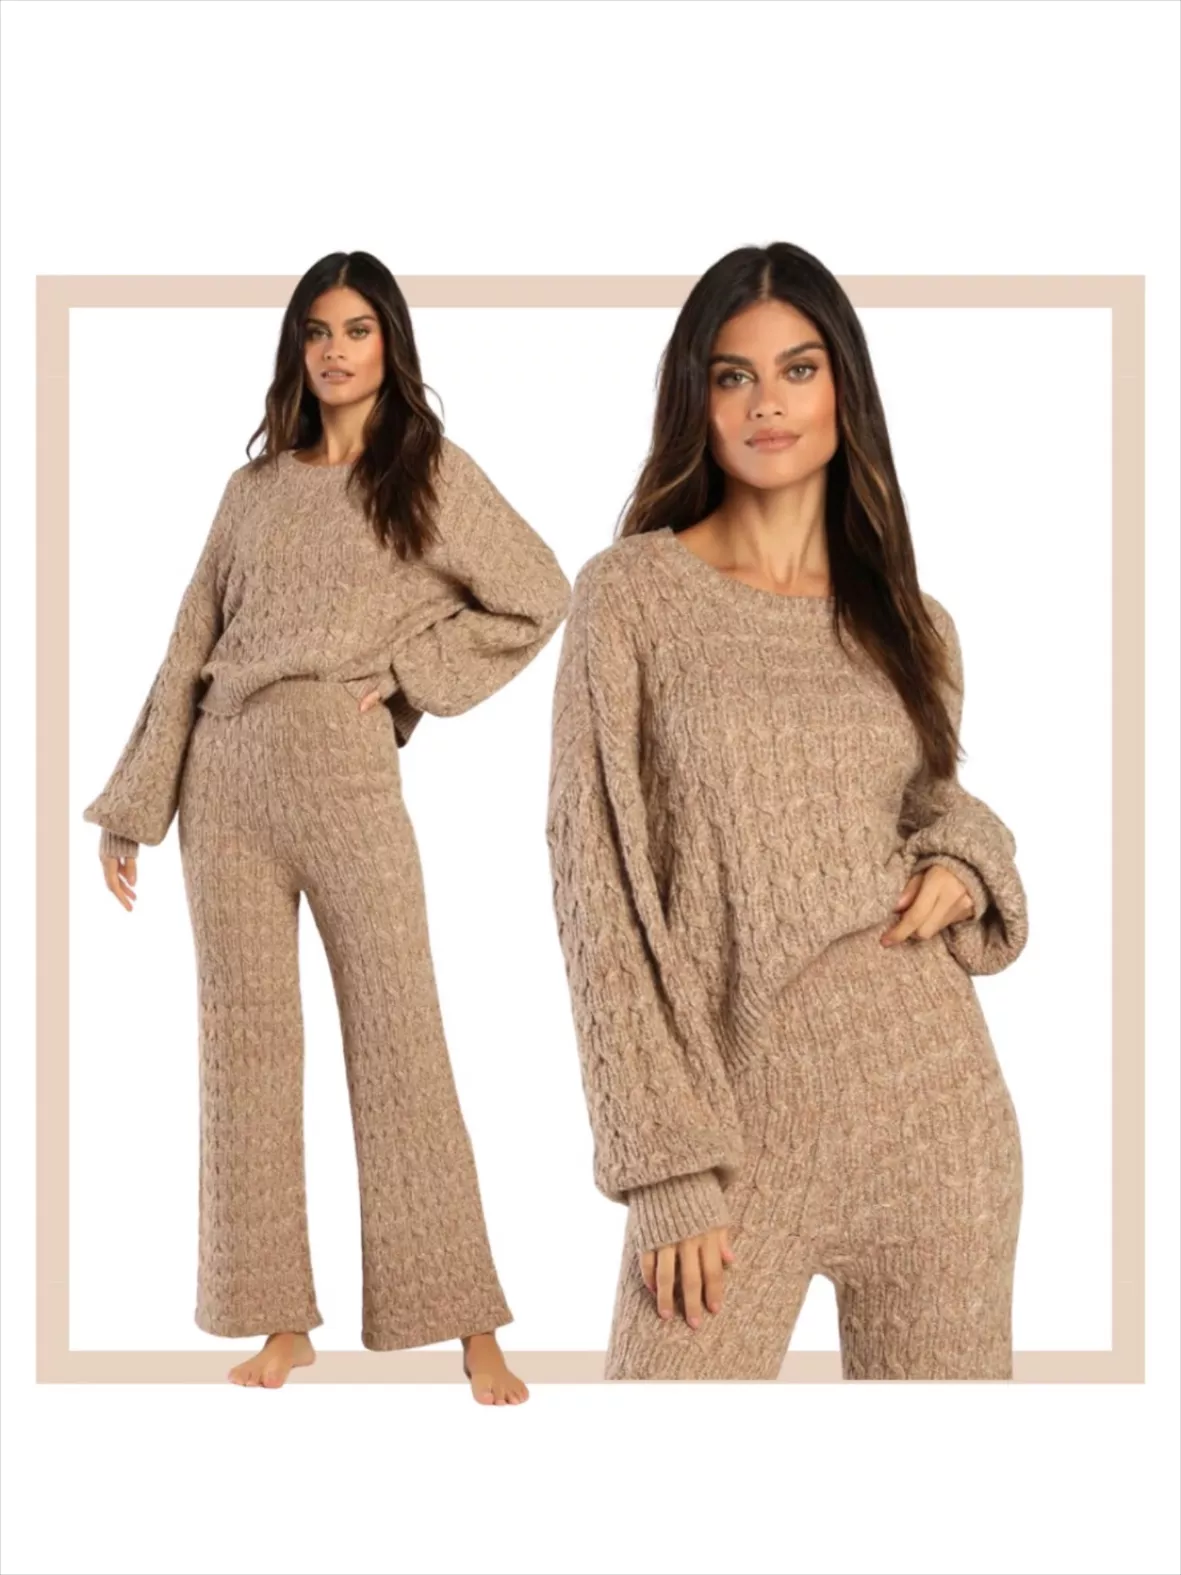 Ivory Sweater Pants - Wide-Leg Sweater Knit Pants - Lounge Pants - Lulus